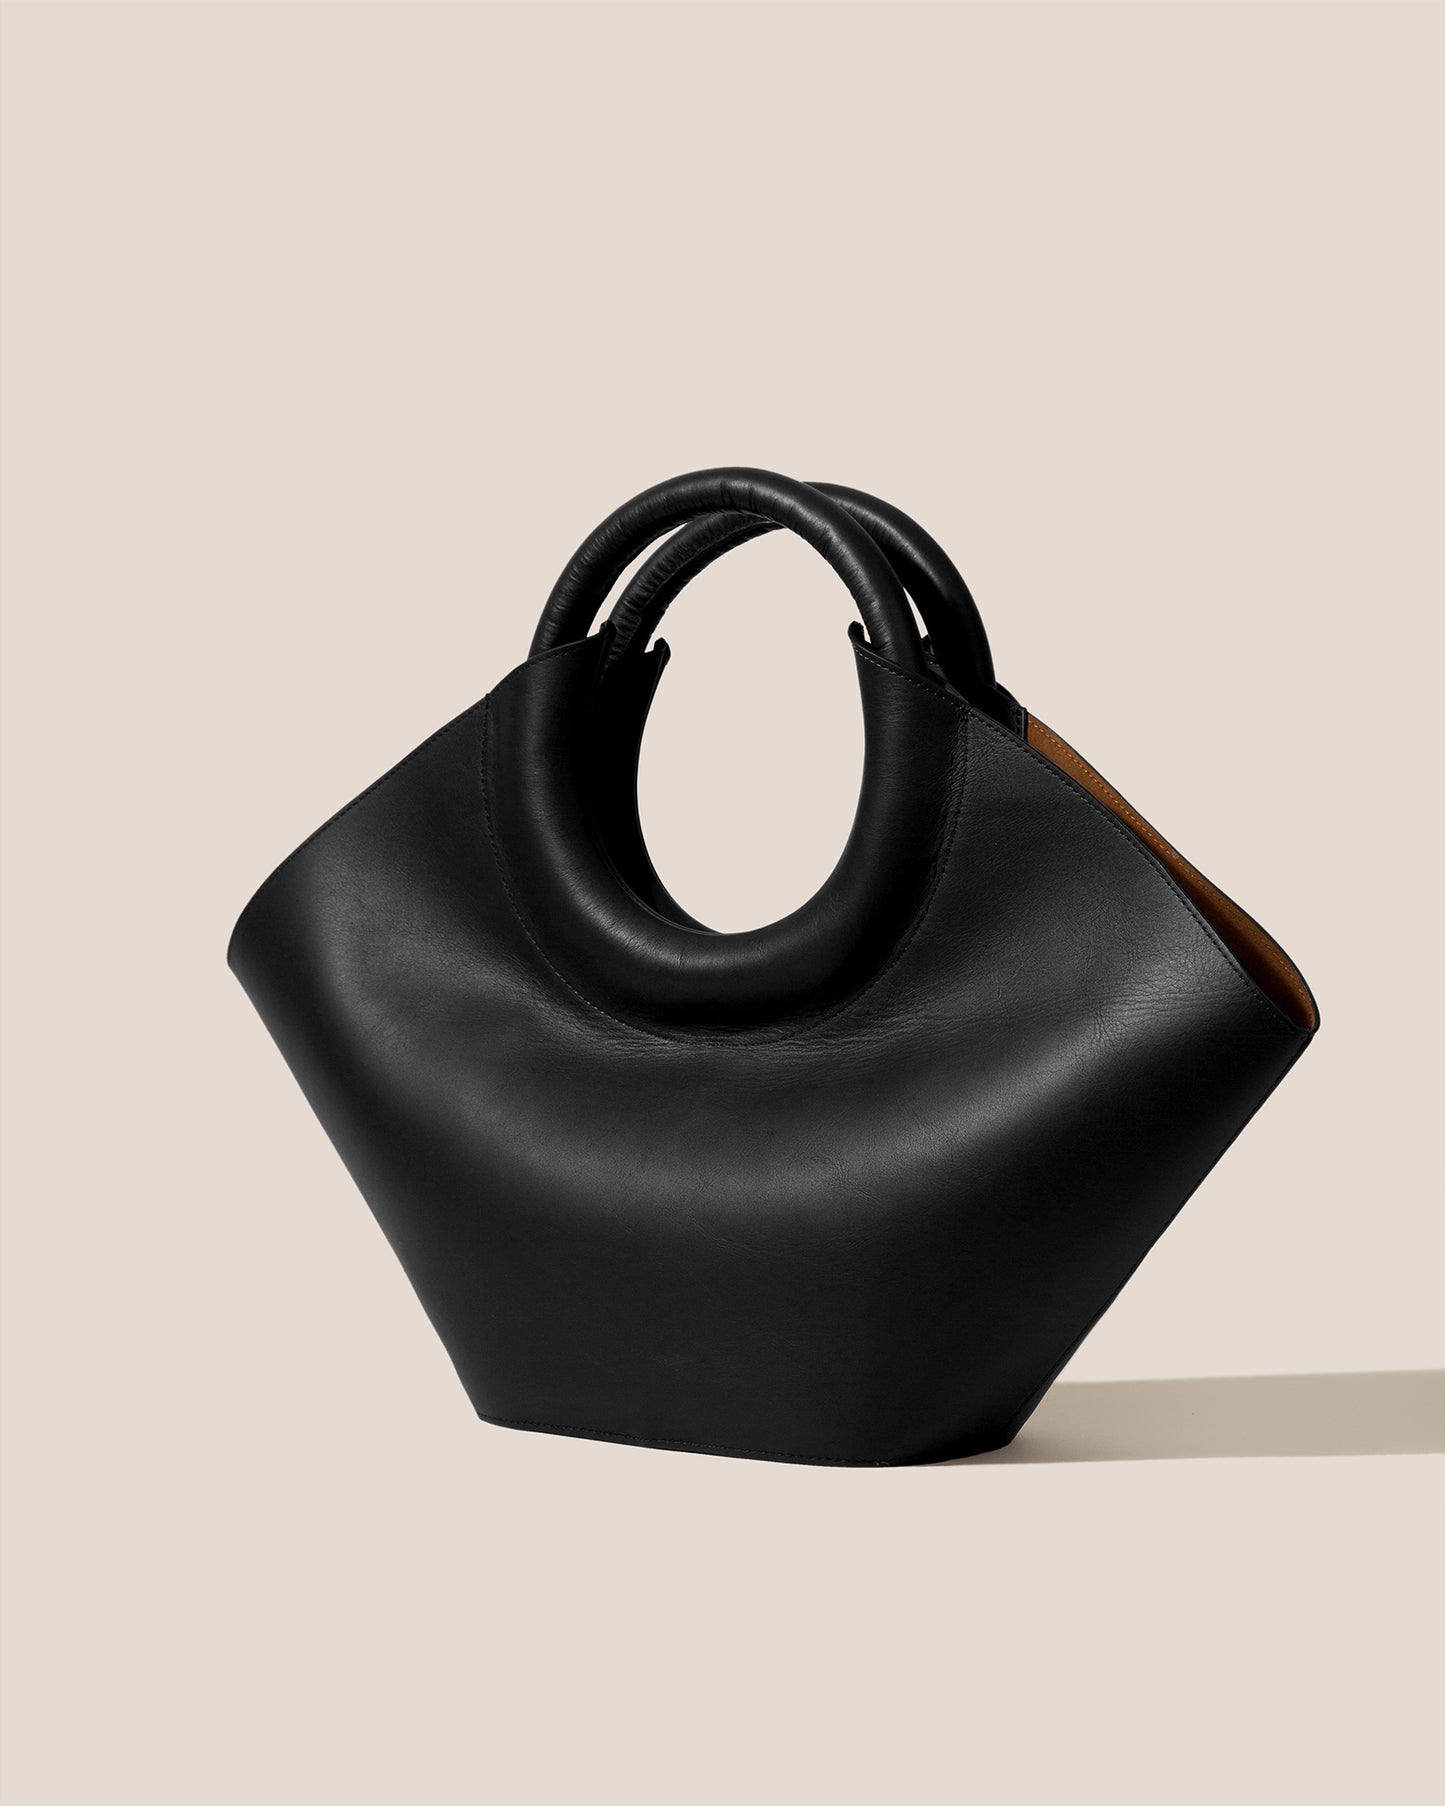 CABASSA - Round-handle Leather Tote Bag